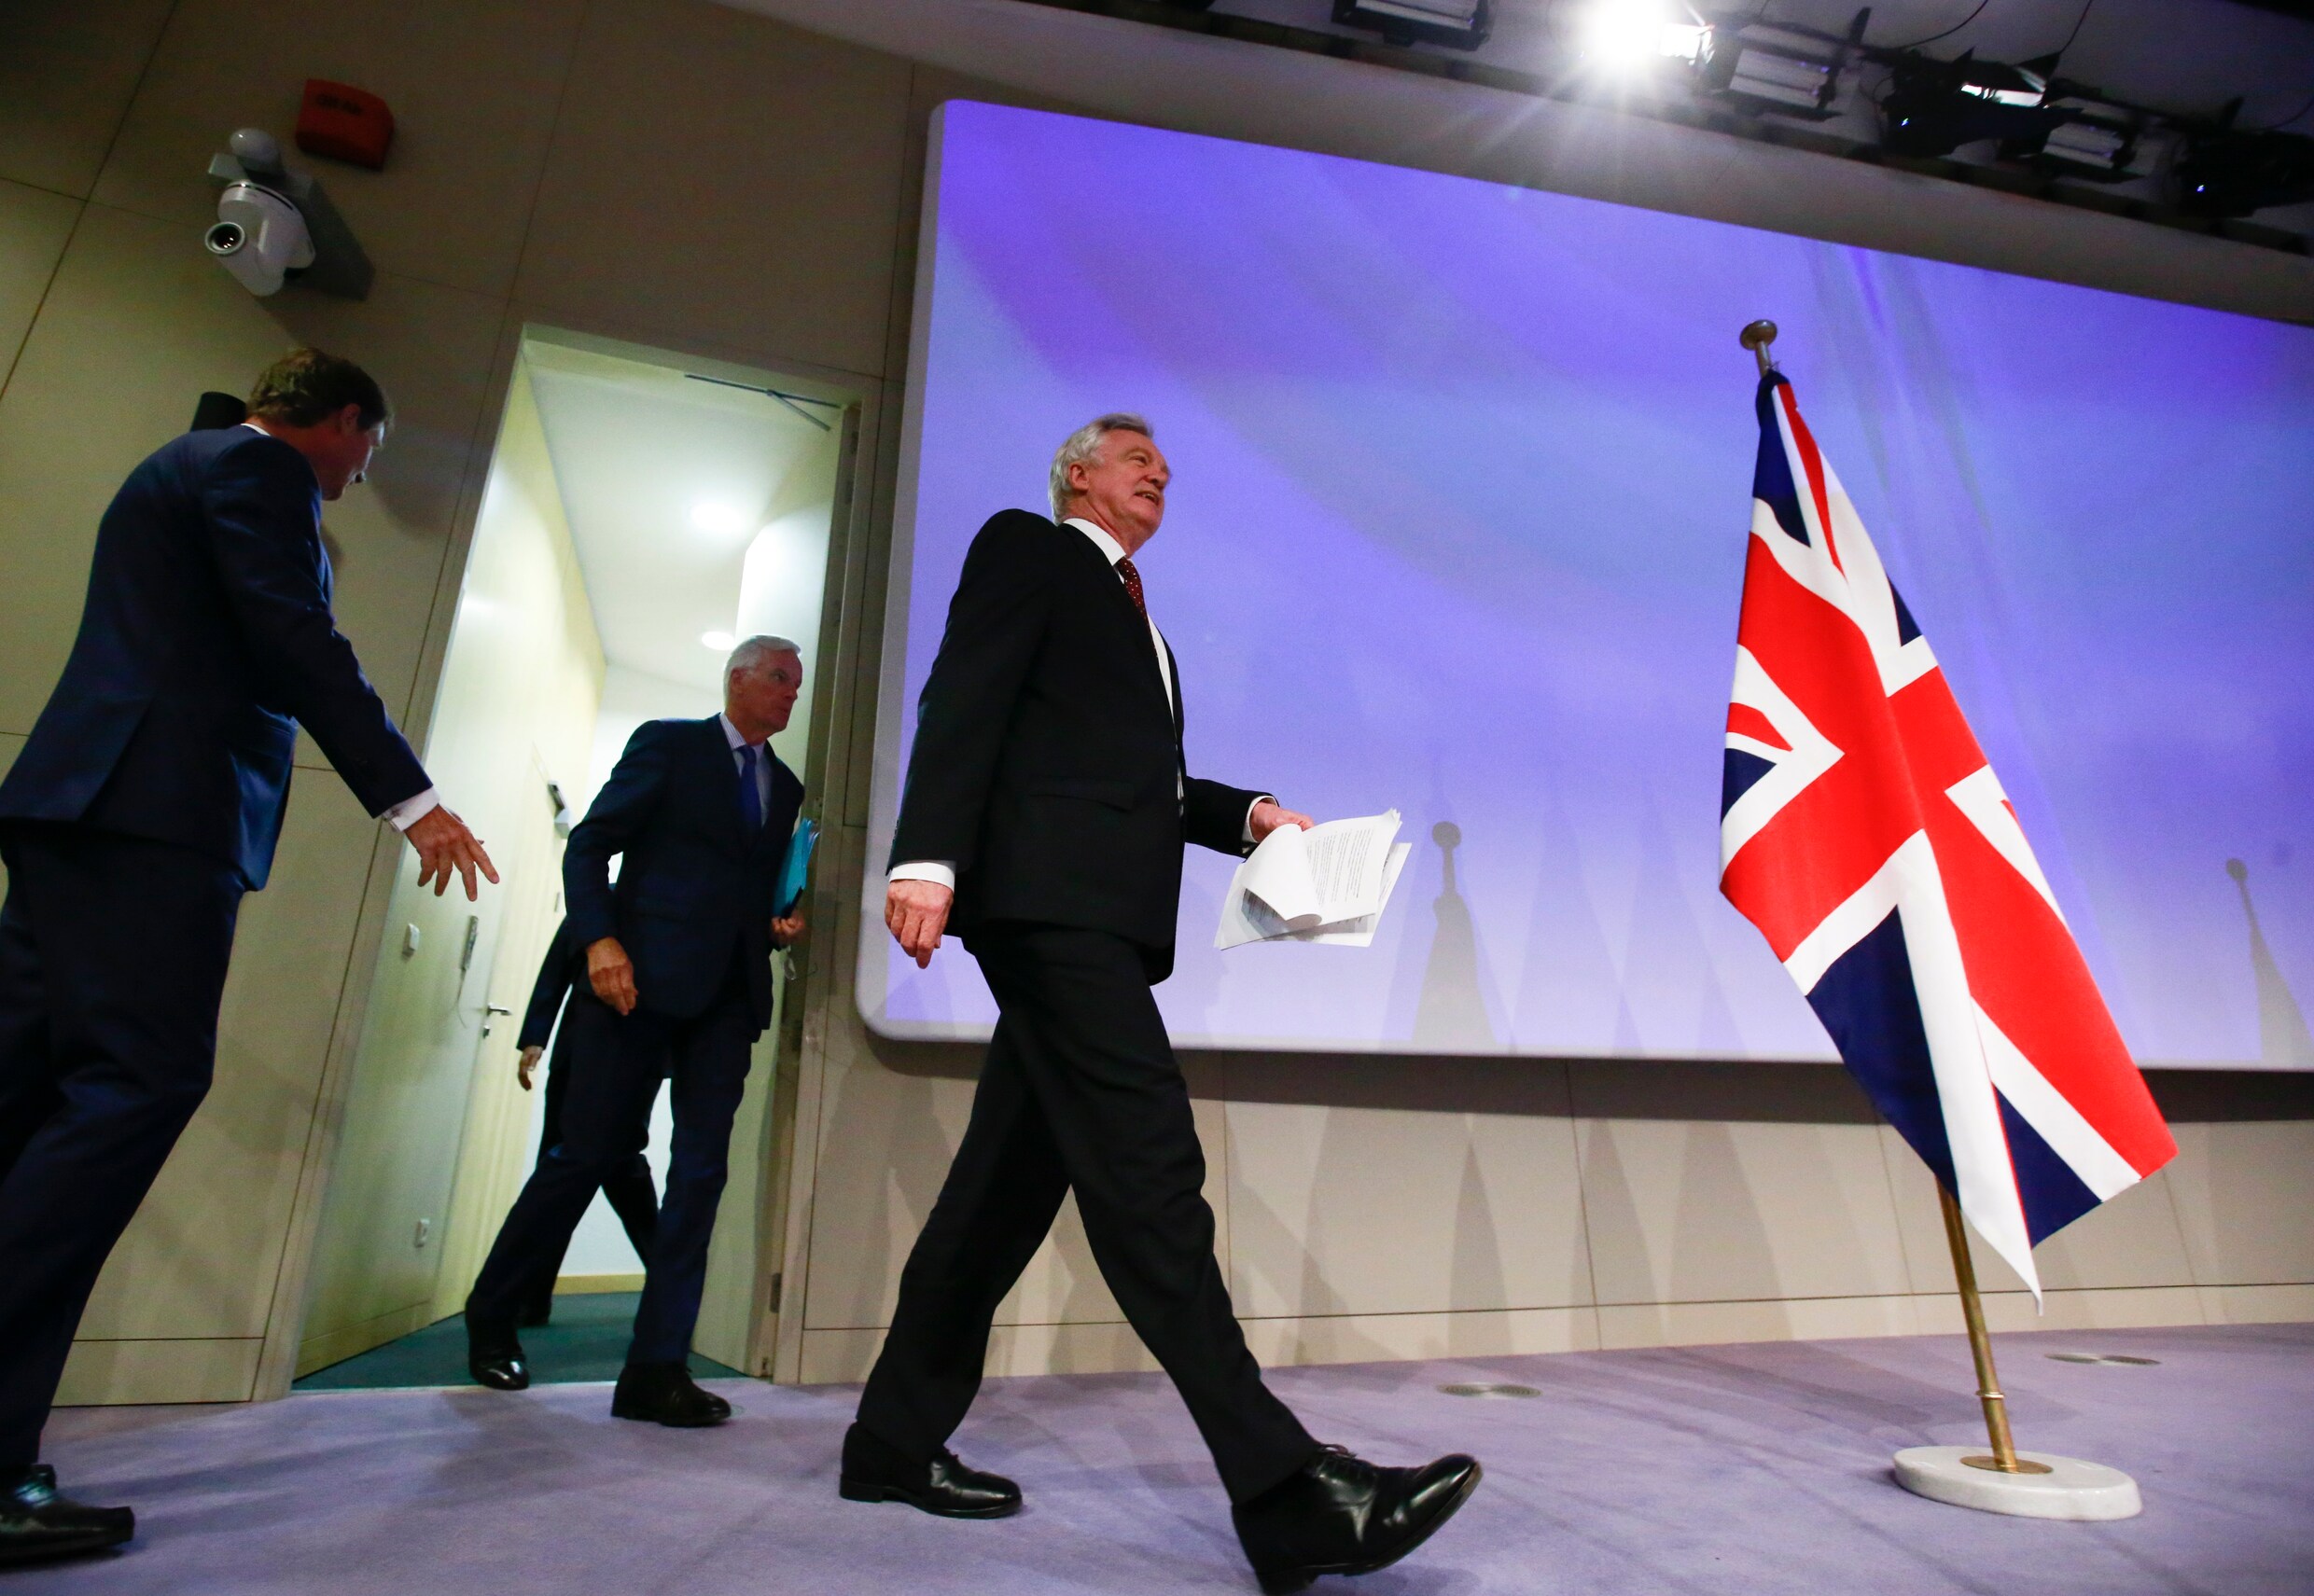 Onderhandelingen zitten muurvast: "Geen enkele vooruitgang geboekt bij nieuwe brexitgesprekken"